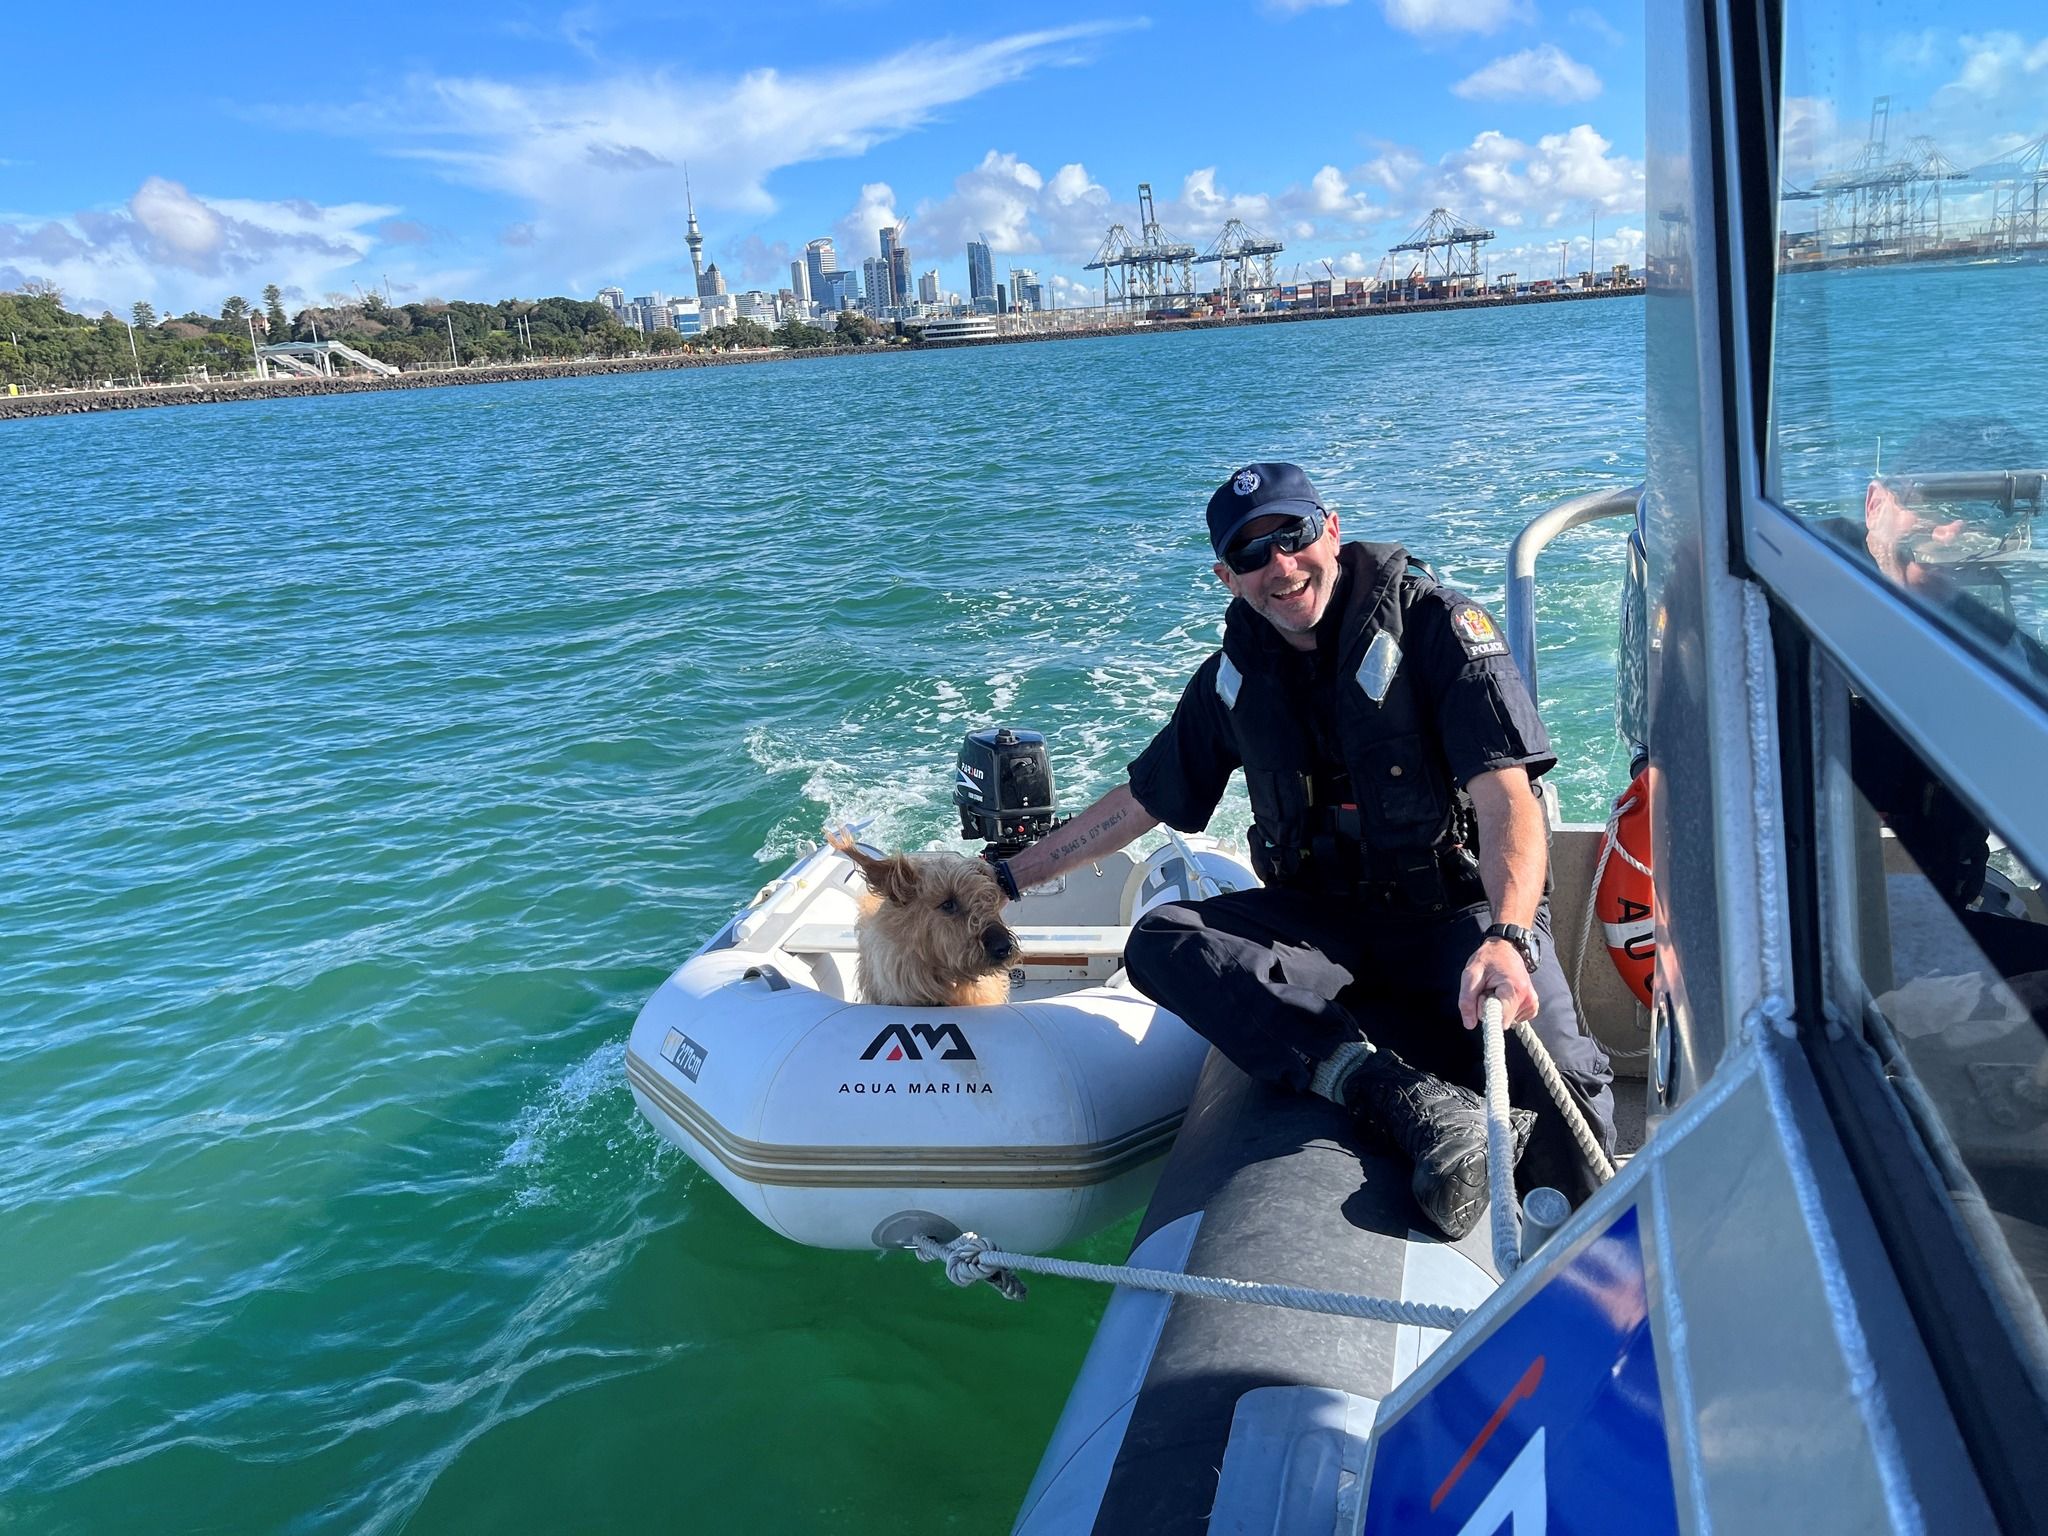 Поліція врятувала собаку, якого знайшли на маленькому човні, що дрейфував у морі